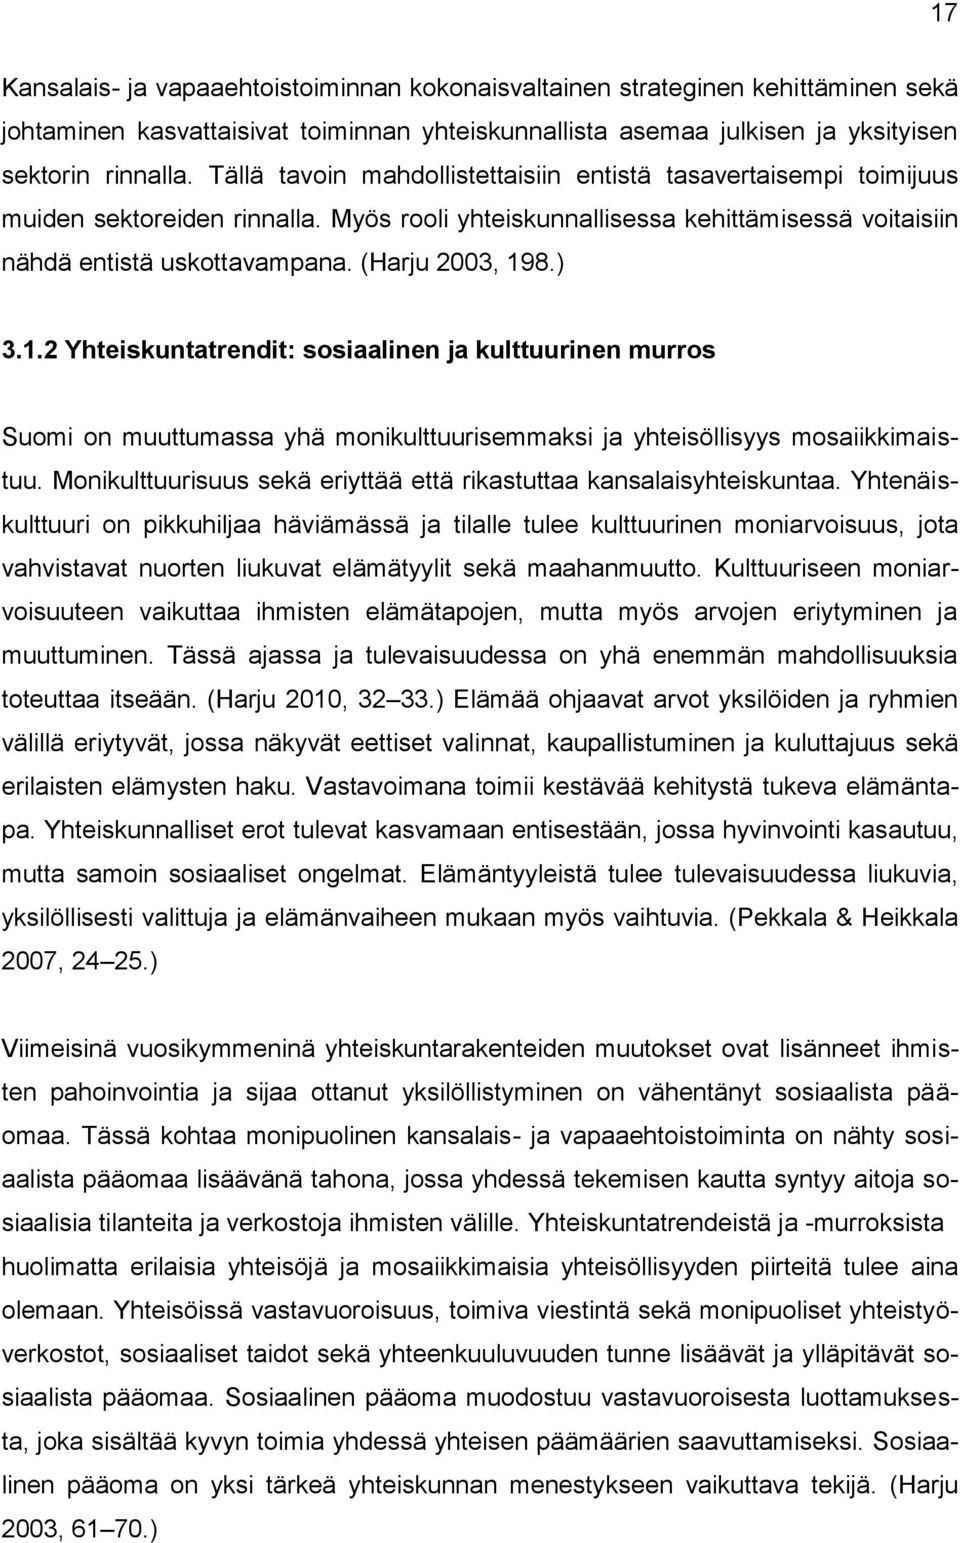 ) 3.1.2 Yhteiskuntatrendit: sosiaalinen ja kulttuurinen murros Suomi on muuttumassa yhä monikulttuurisemmaksi ja yhteisöllisyys mosaiikkimaistuu.